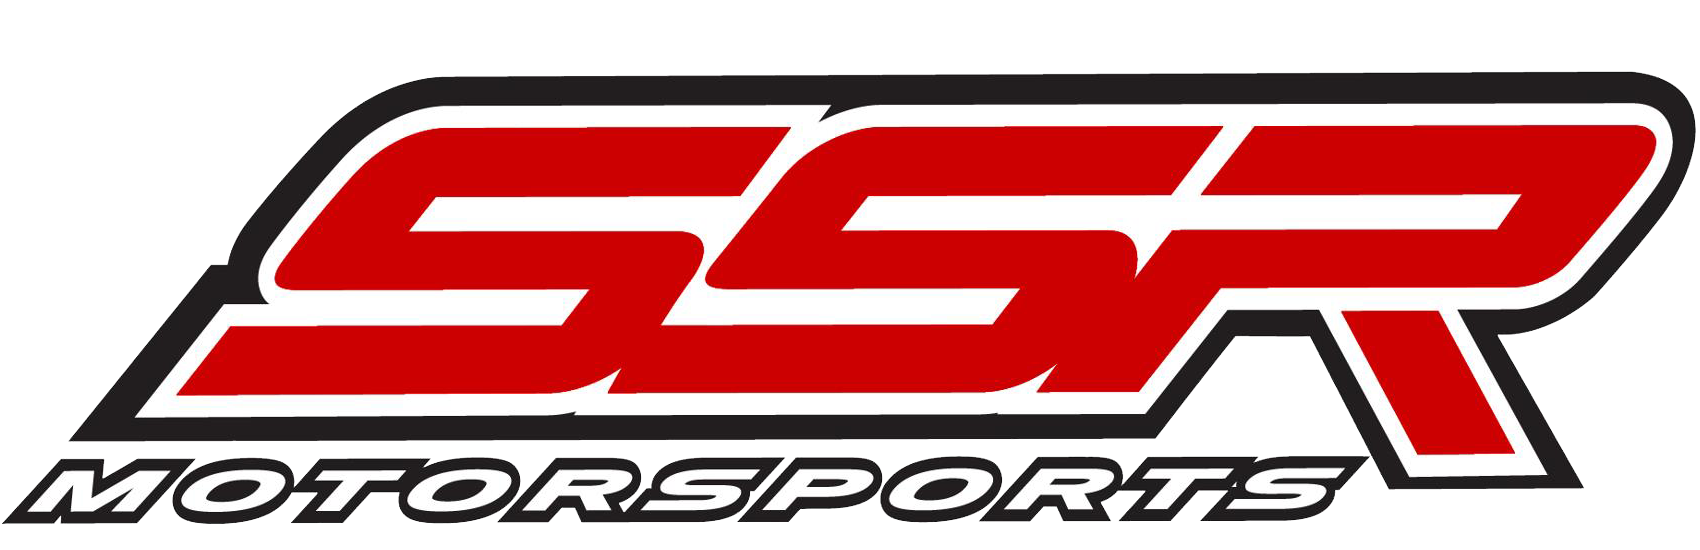 SSR Motorsports Dealer